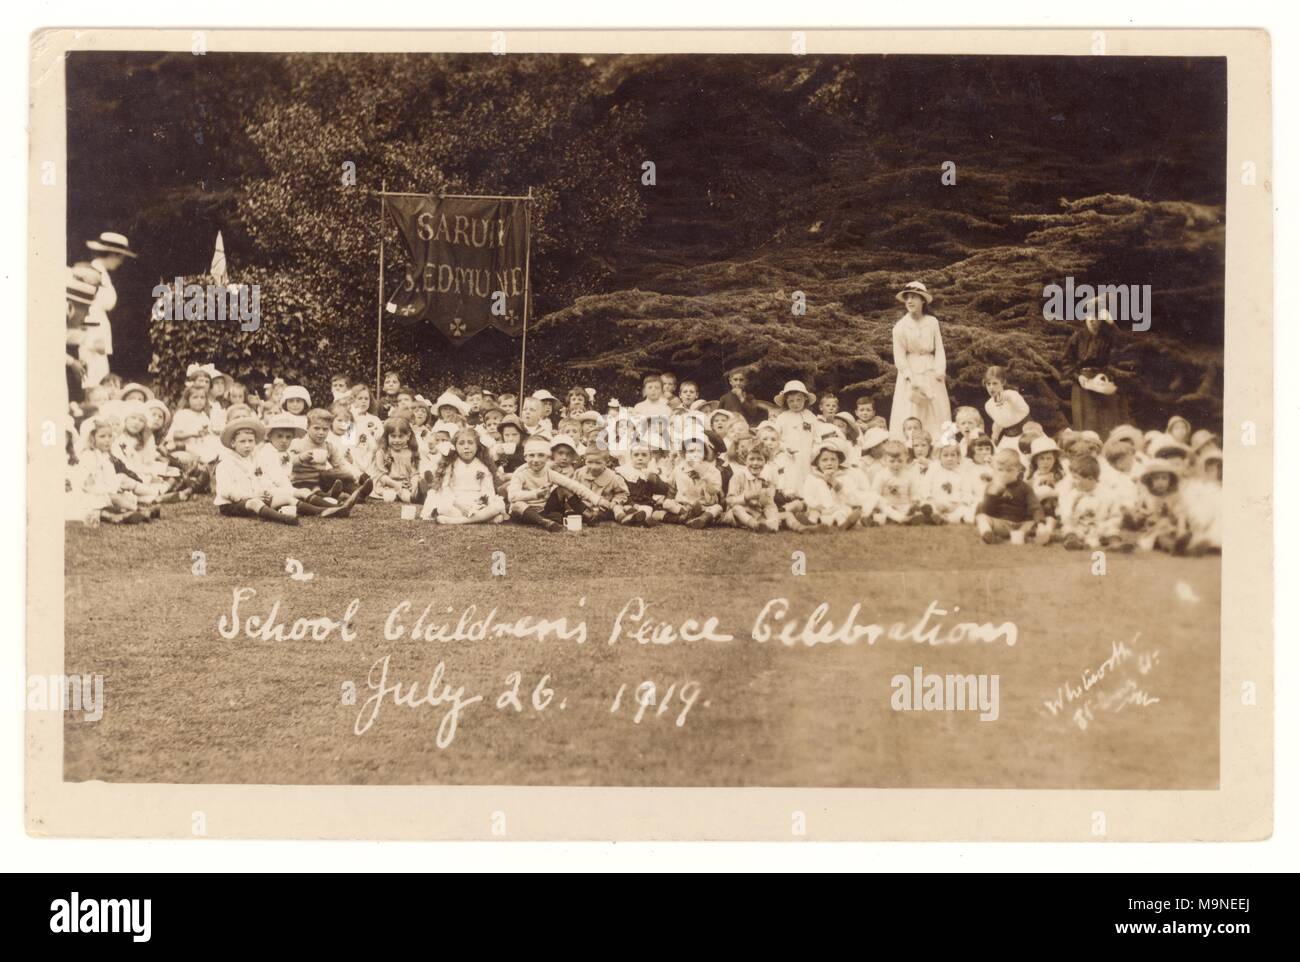 Carte postale originale de la première Guerre mondiale des célébrations de la paix pour enfants scolaires, 26 juillet 1919, pour célébrer la fin de la première Guerre mondiale. Sarum St. Edmund, Salisbury, Royaume-Uni Banque D'Images